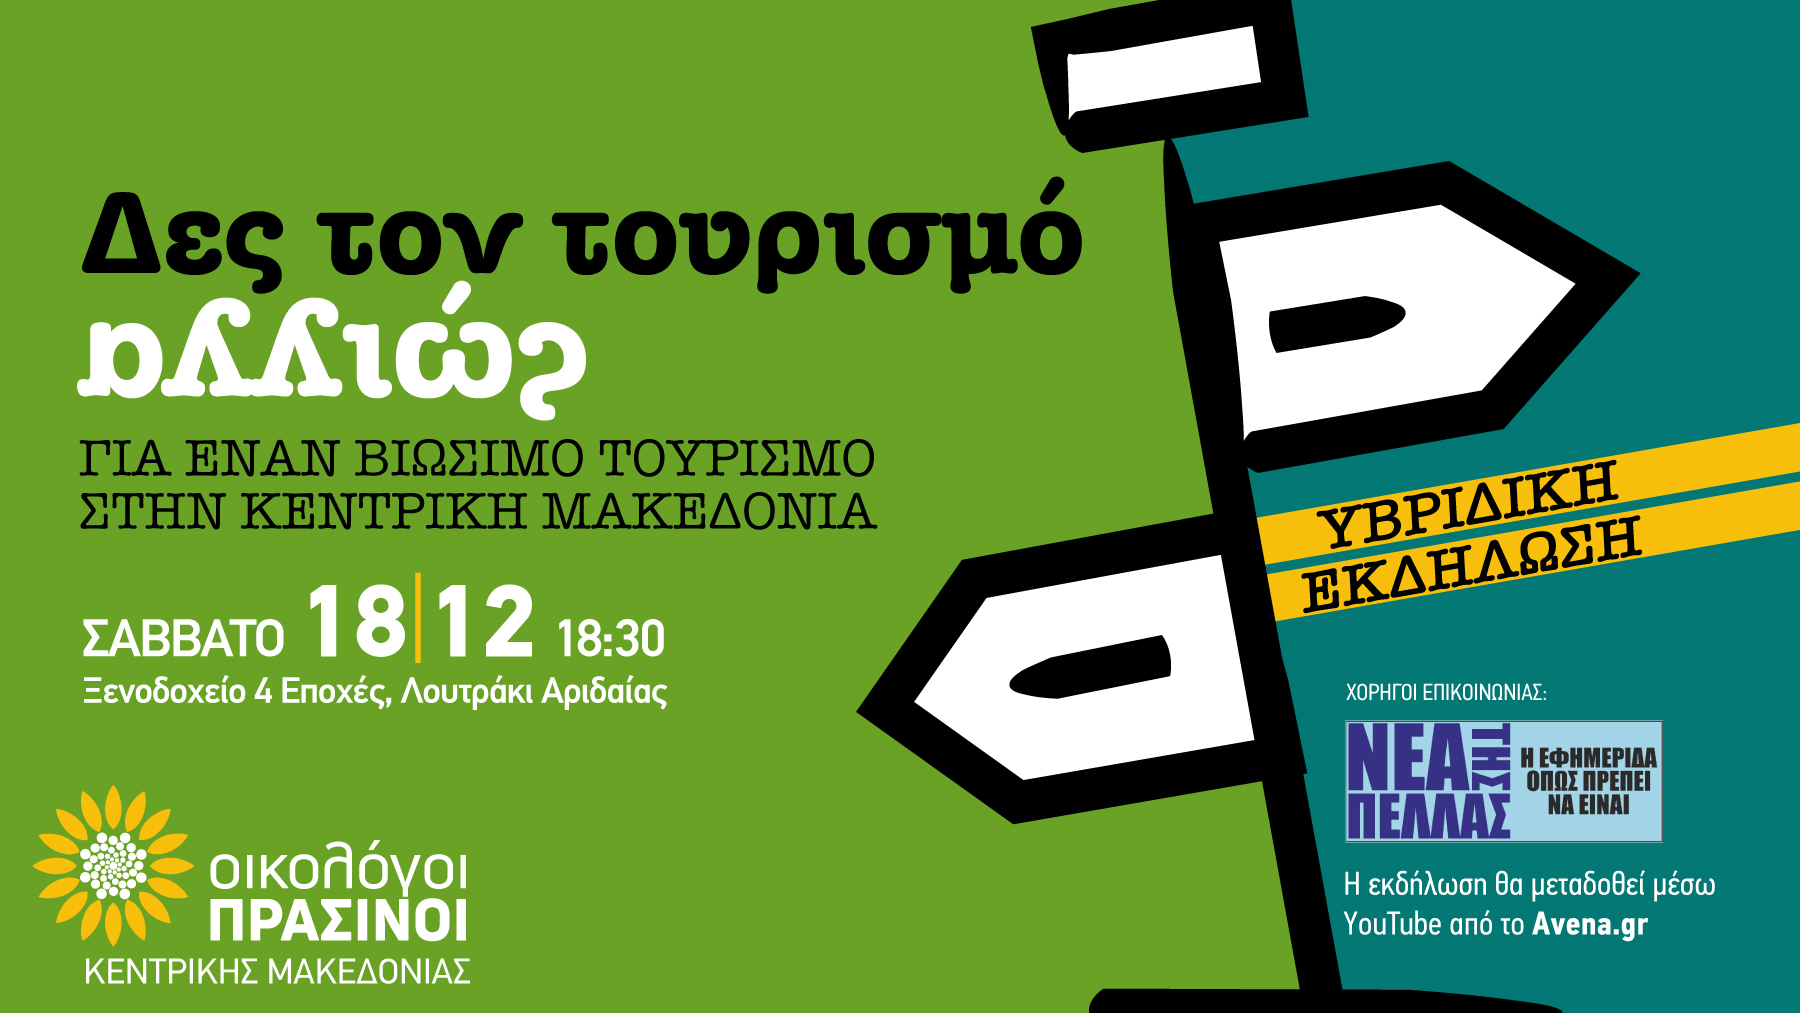 Σας προσκαλούμε στην υβριδική εκδήλωση «ΔΕΣ ΤΟΝ ΤΟΥΡΙΣΜΟ ΑΛΛΙΩΣ | Για έναν βιώσιμο τουρισμό στην Κεντρική Μακεδονία» της Περιφερειακής Οργάνωσης Κεντρικής Μακεδονίας των Οικολόγων ΠΡΑΣΙΝΩΝ, που θα πραγματοποιηθεί το Σάββατο, […]